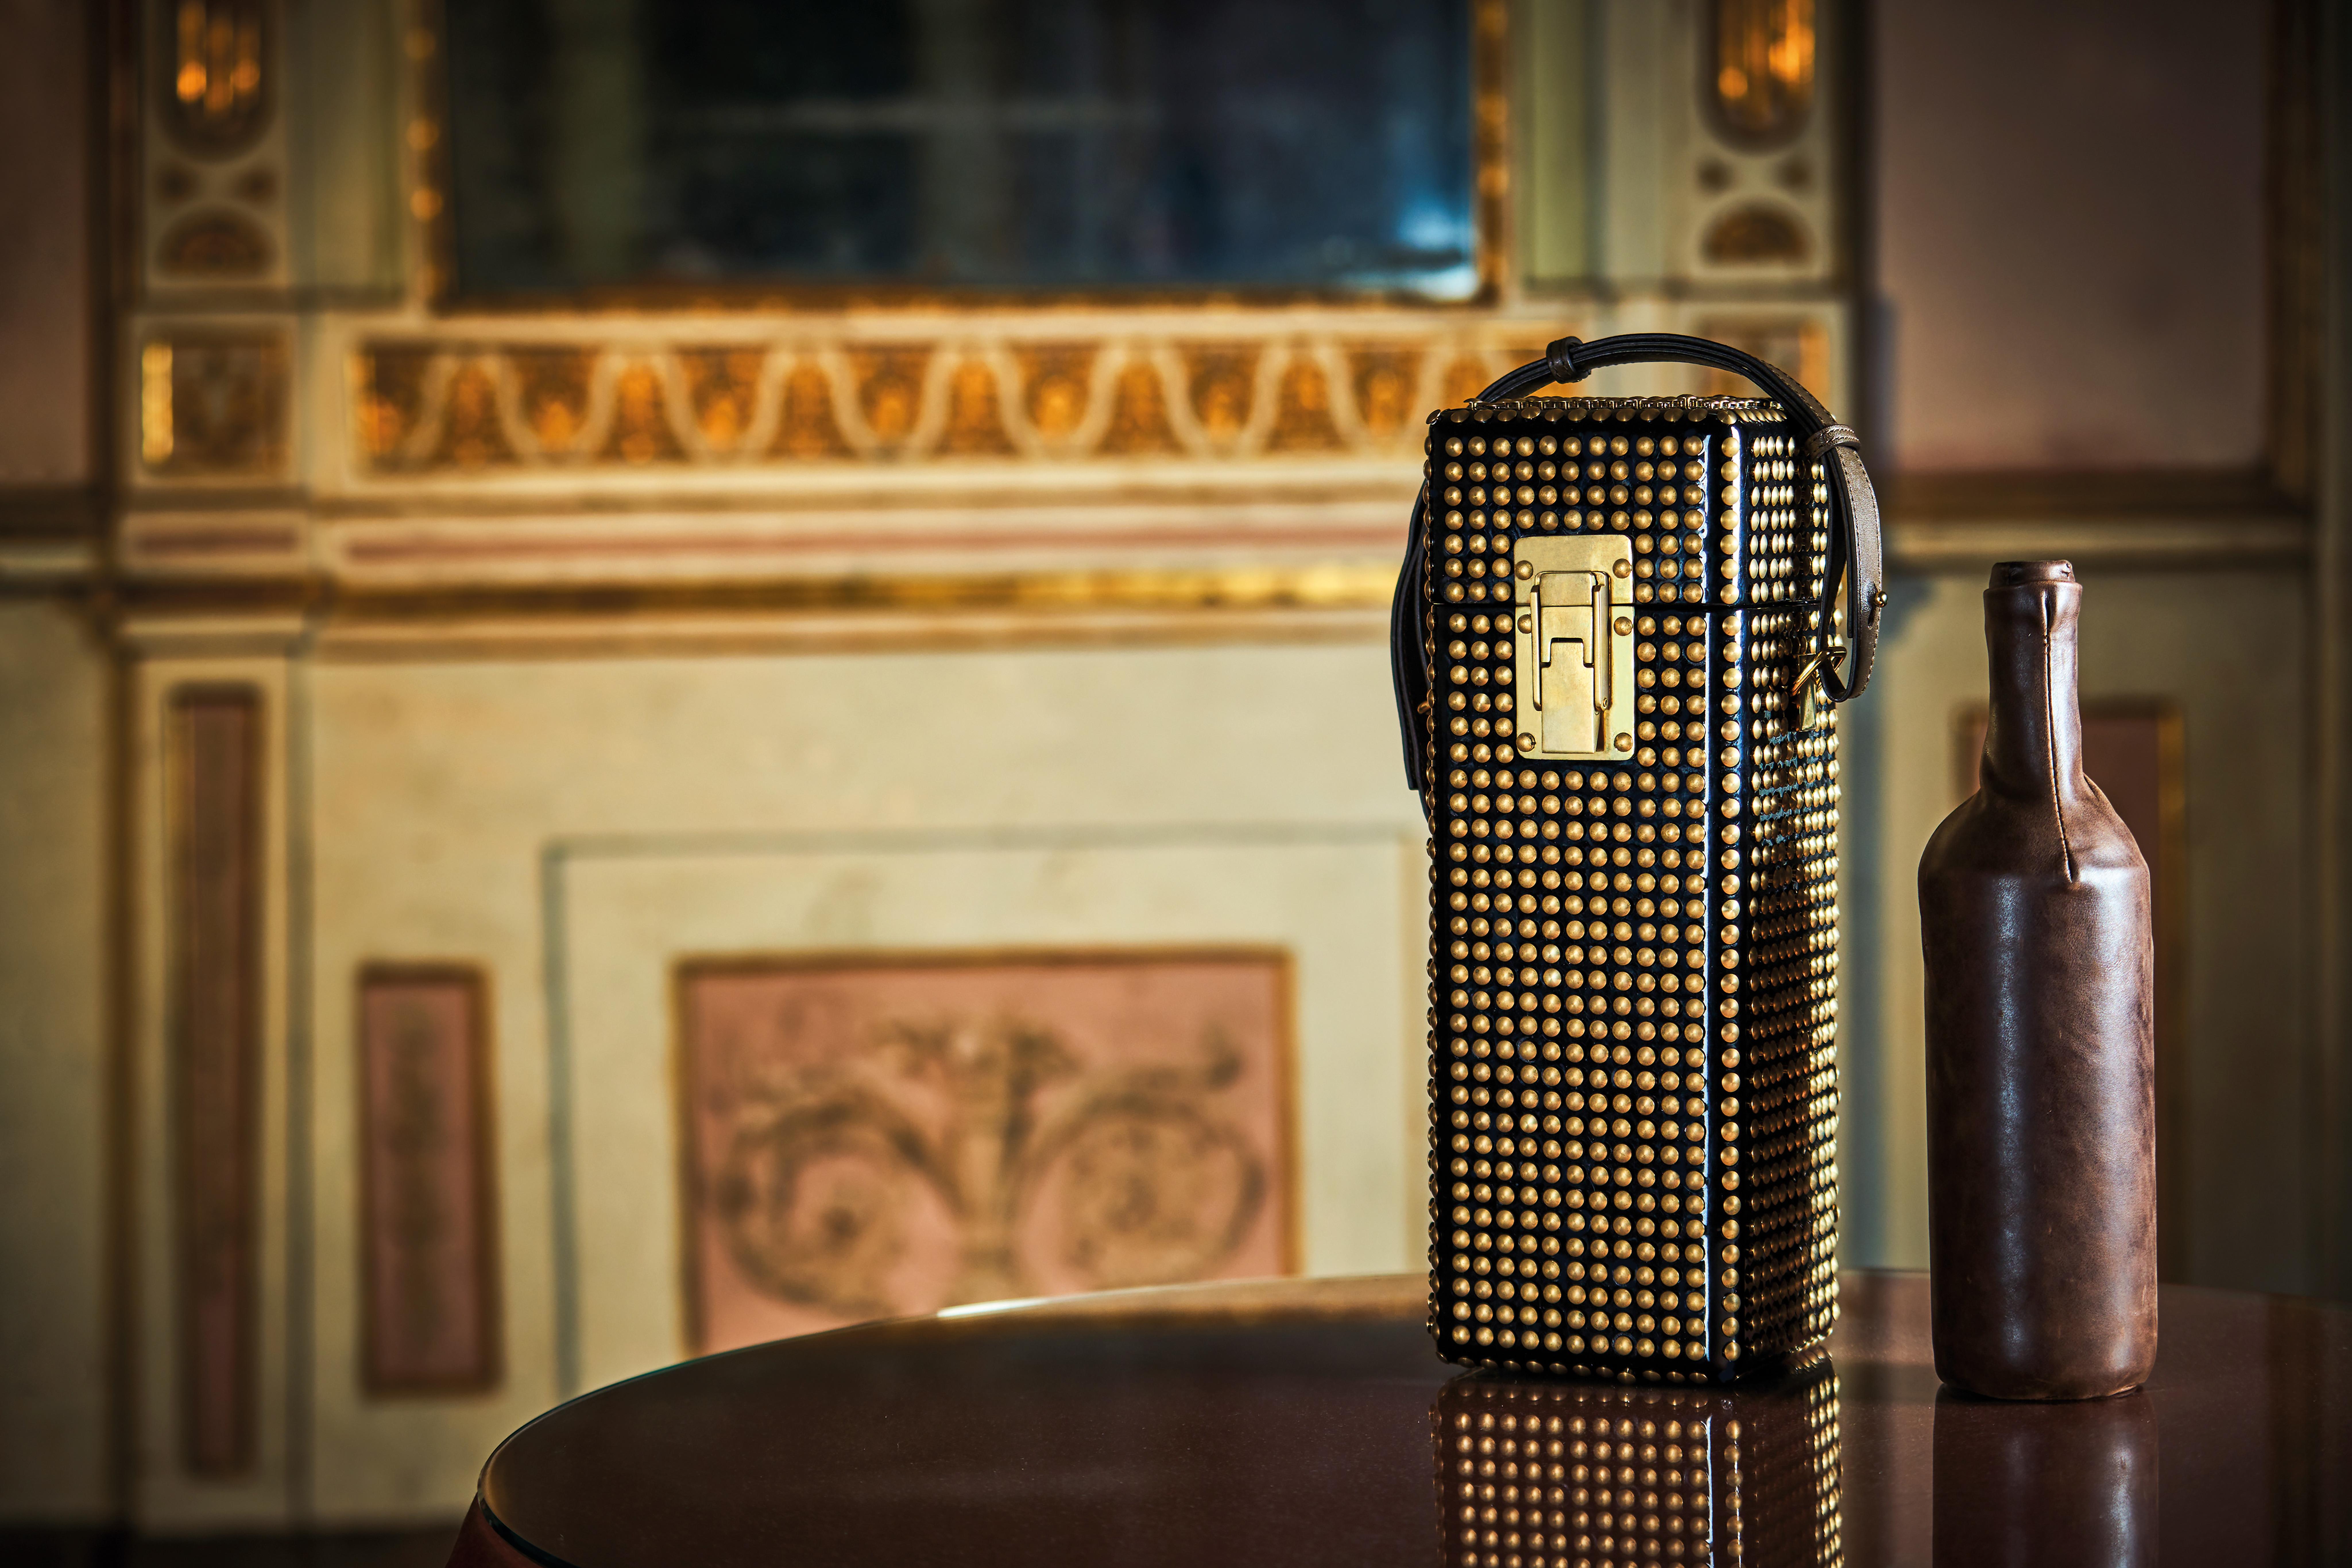 Montecarlo ist die perfekte Schatulle für die kostbarste Weinflasche, ein handgefertigtes Einzelstück, das die Handwerkskunst des Made in Italy unterstreicht. Ein äußerst elegantes Design-Accessoire, bei dem der Glanz der schwarzen Lackierung durch